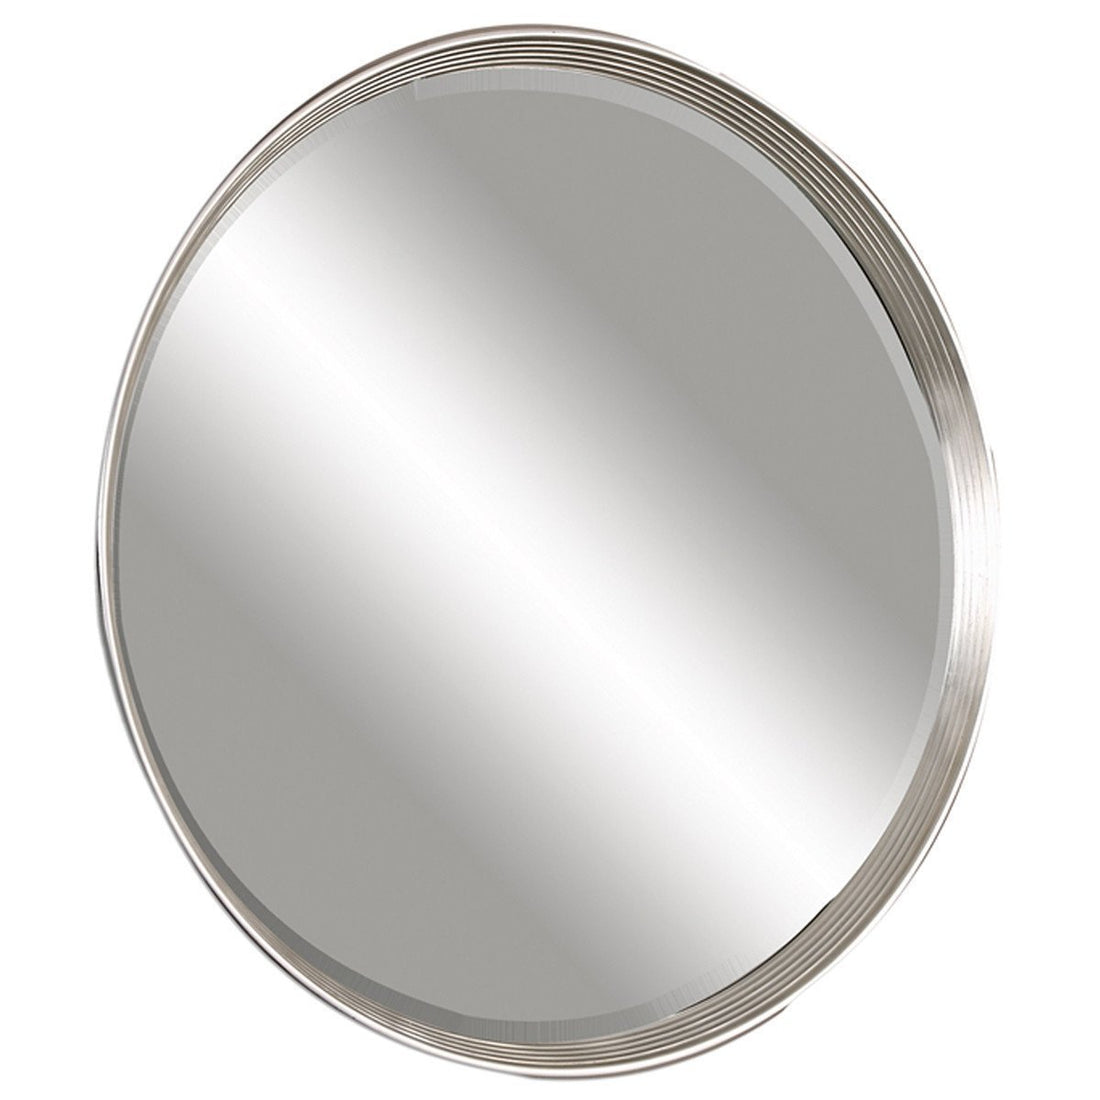 Uttermost Serenza Round Silver Mirror